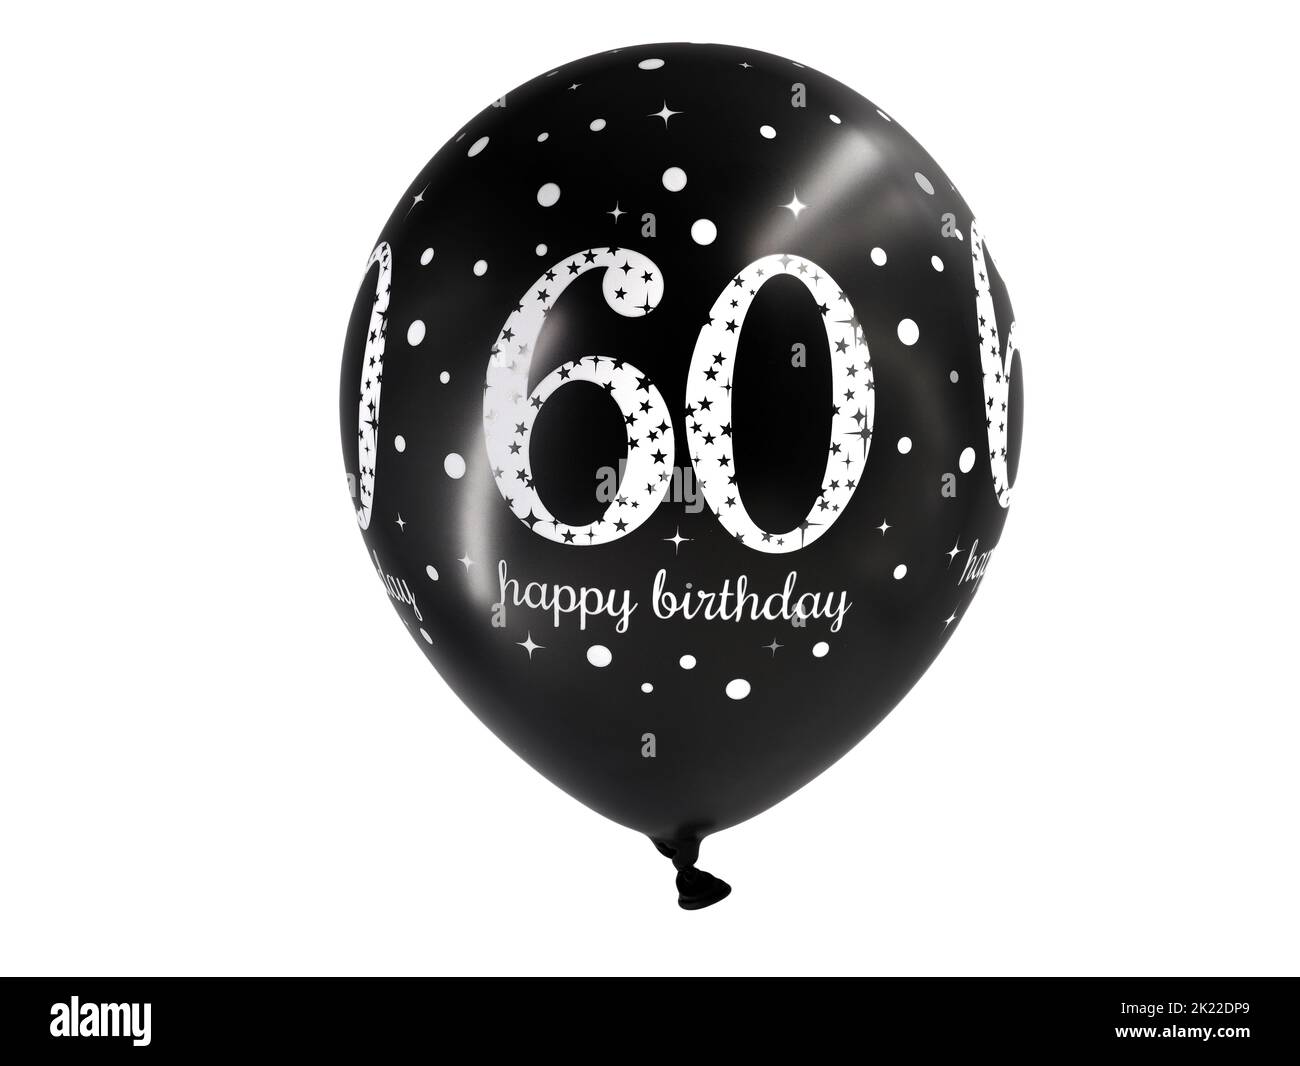 ballon d'anniversaire noir de soixante ans avec texte imprimé joyeux anniversaire sur fond blanc Banque D'Images